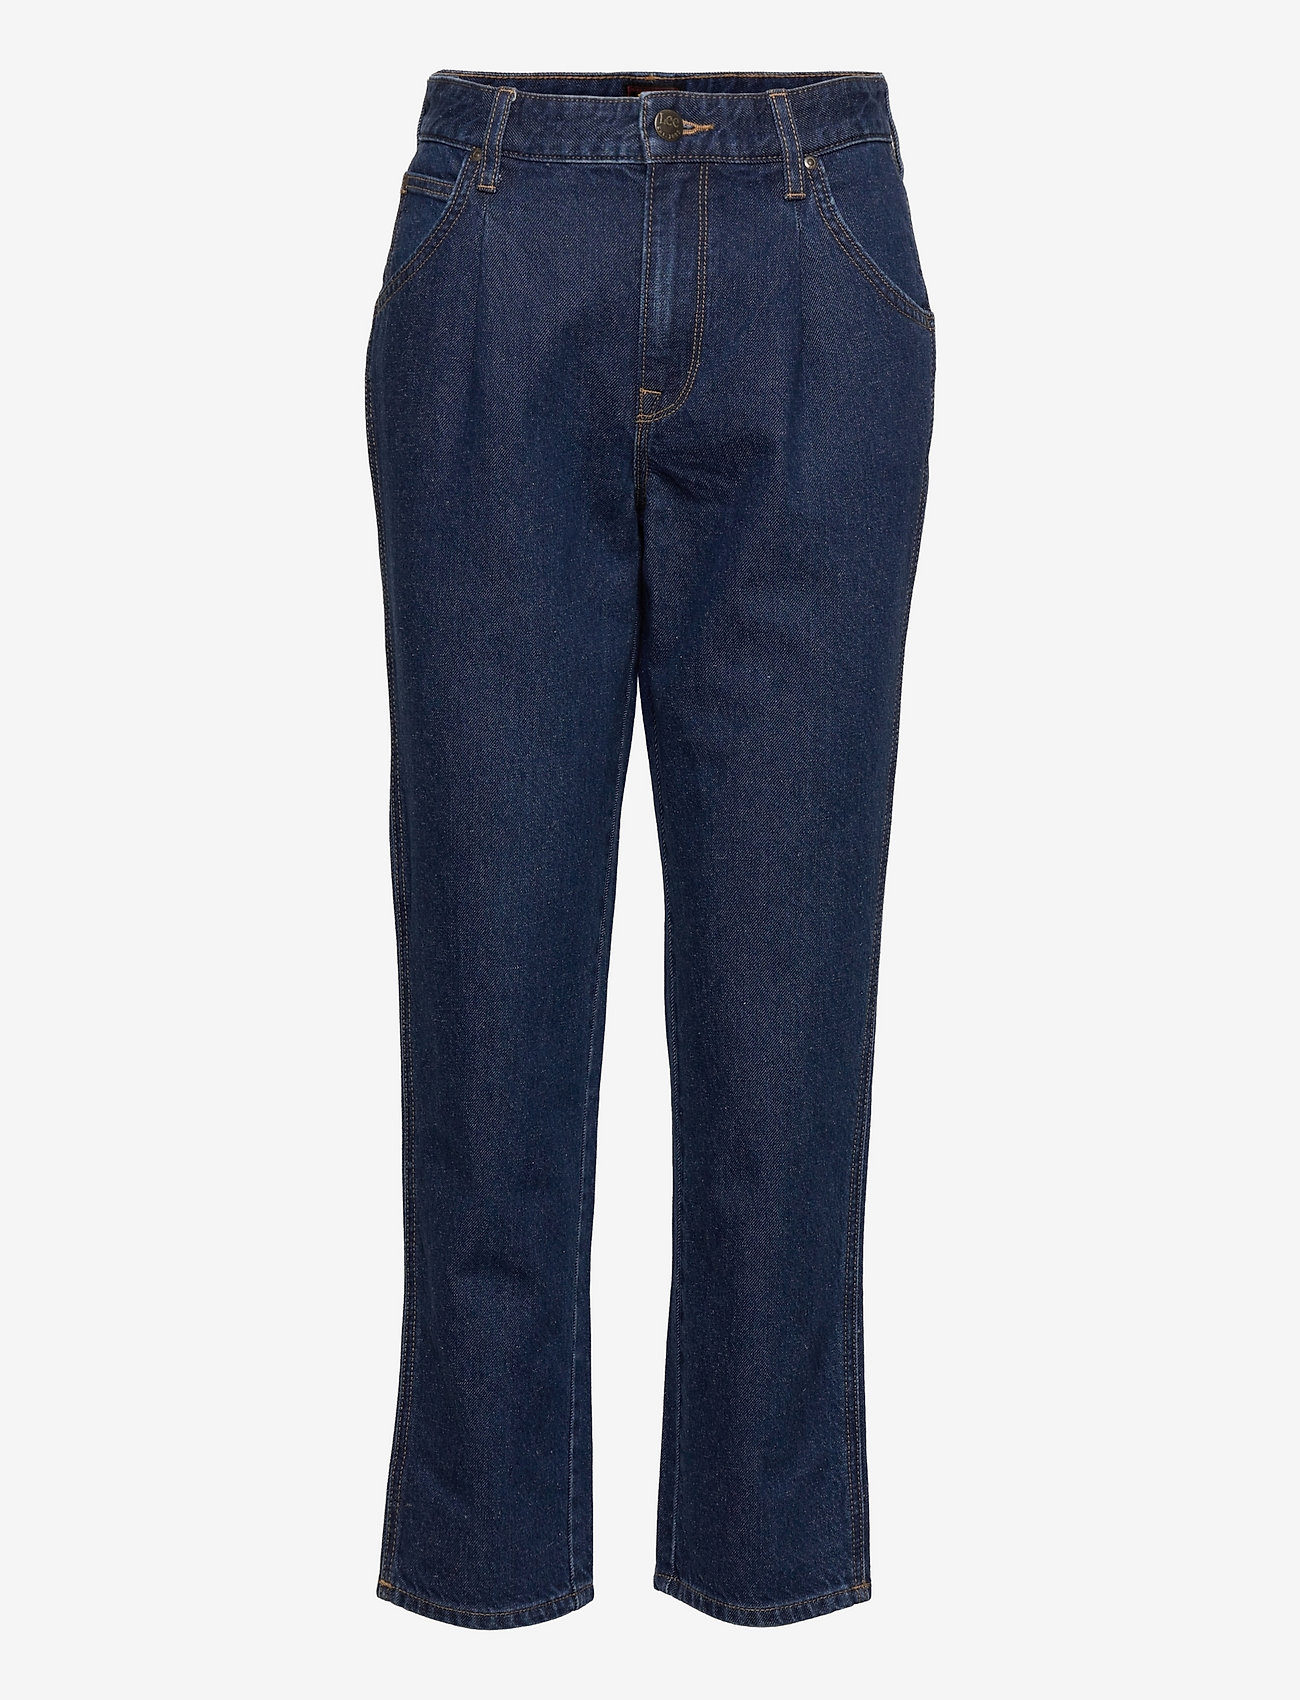 Lee Jeans - CAROL PLEATED - tiesaus kirpimo džinsai - rinse - 0